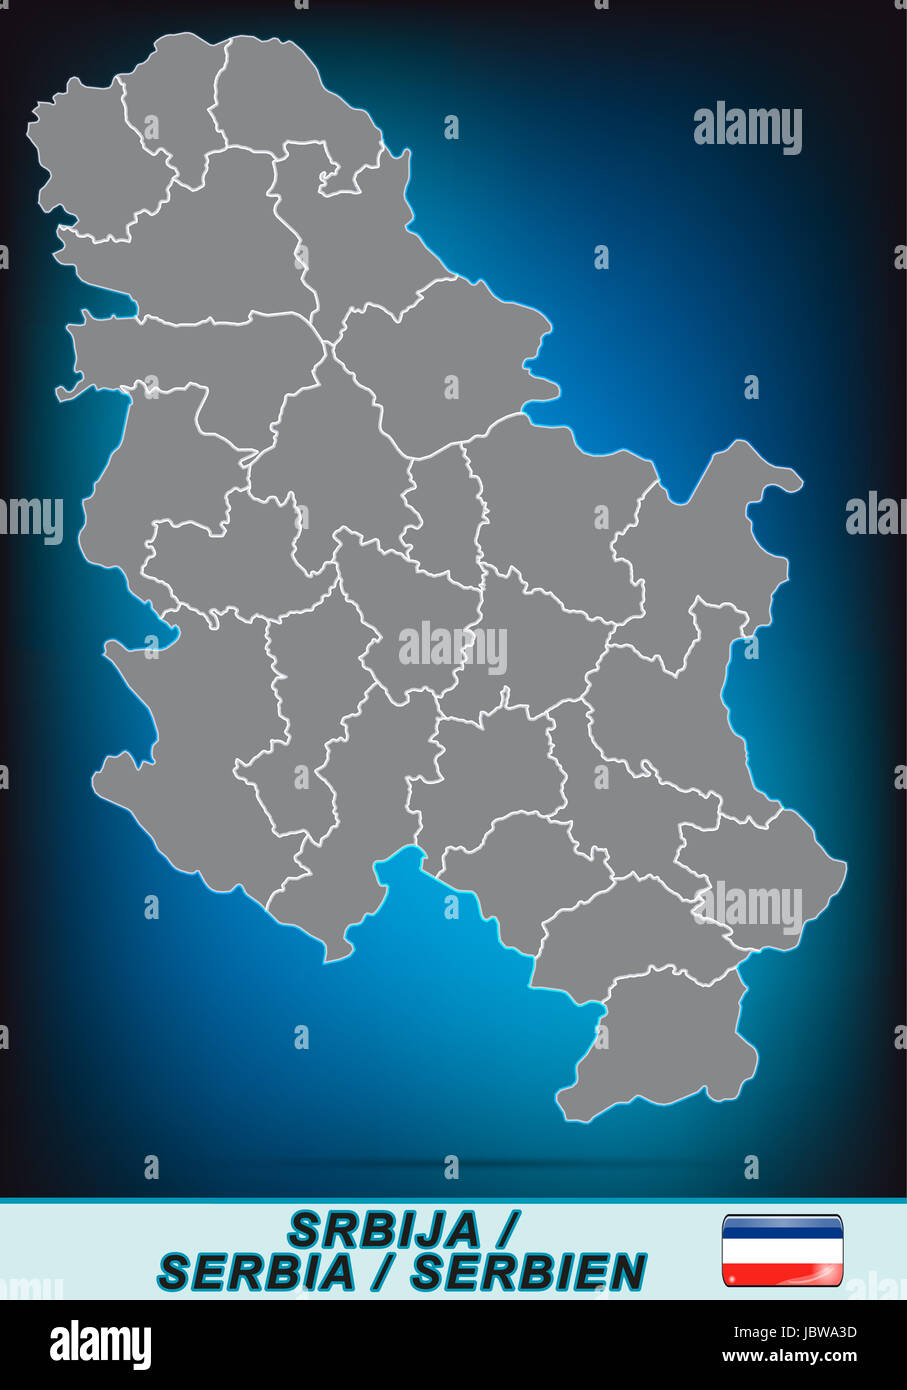 Karte von Serbien mit Grenzen in leuchtend grau Stock Photo - Alamy